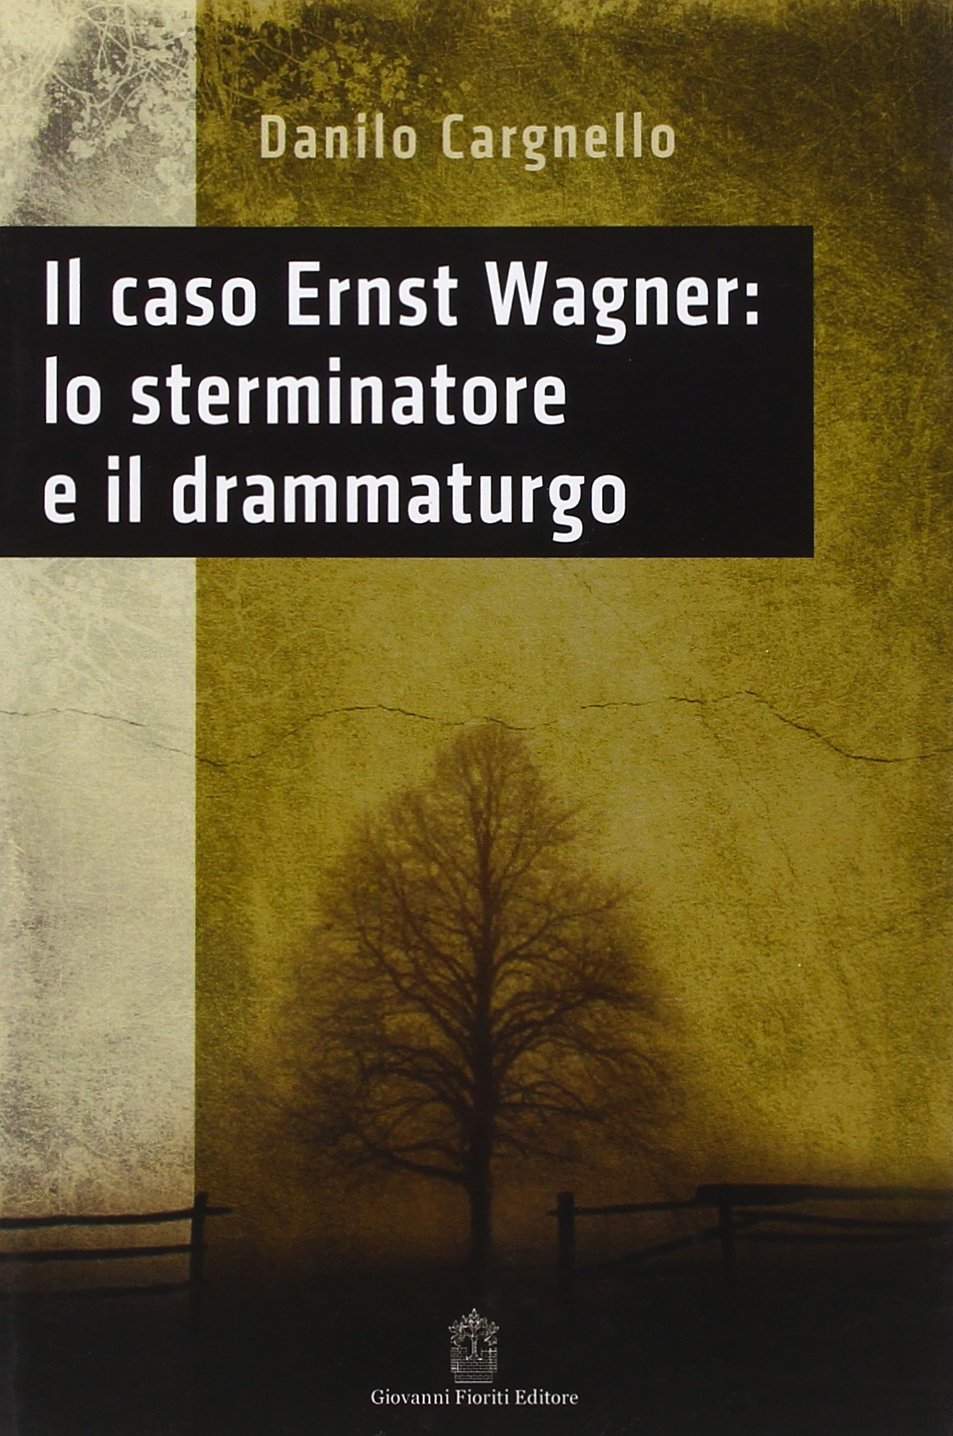 Libri Danilo Cargnello - Il Caso Ernst Wagner: Lo Sterminatore E Il Drammaturgo NUOVO SIGILLATO, EDIZIONE DEL 04/08/2016 SUBITO DISPONIBILE